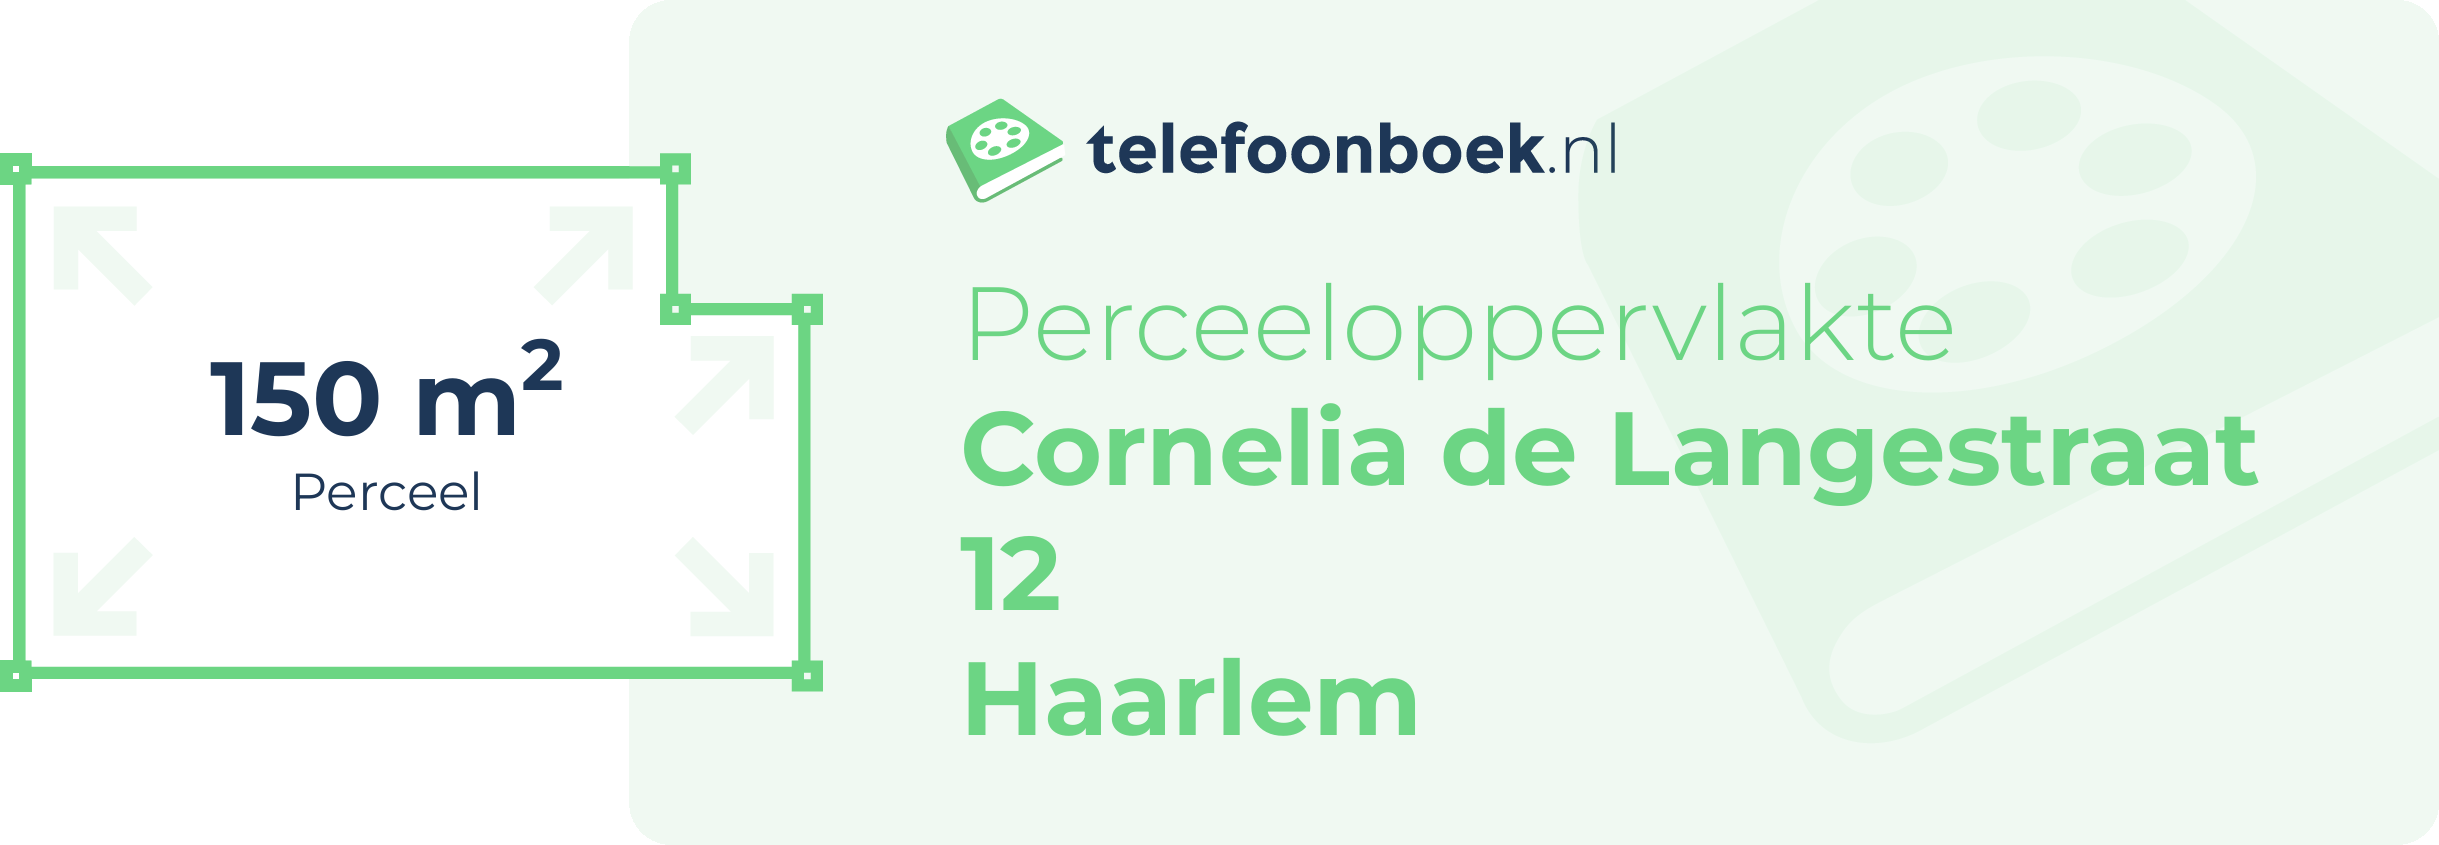 Perceeloppervlakte Cornelia De Langestraat 12 Haarlem